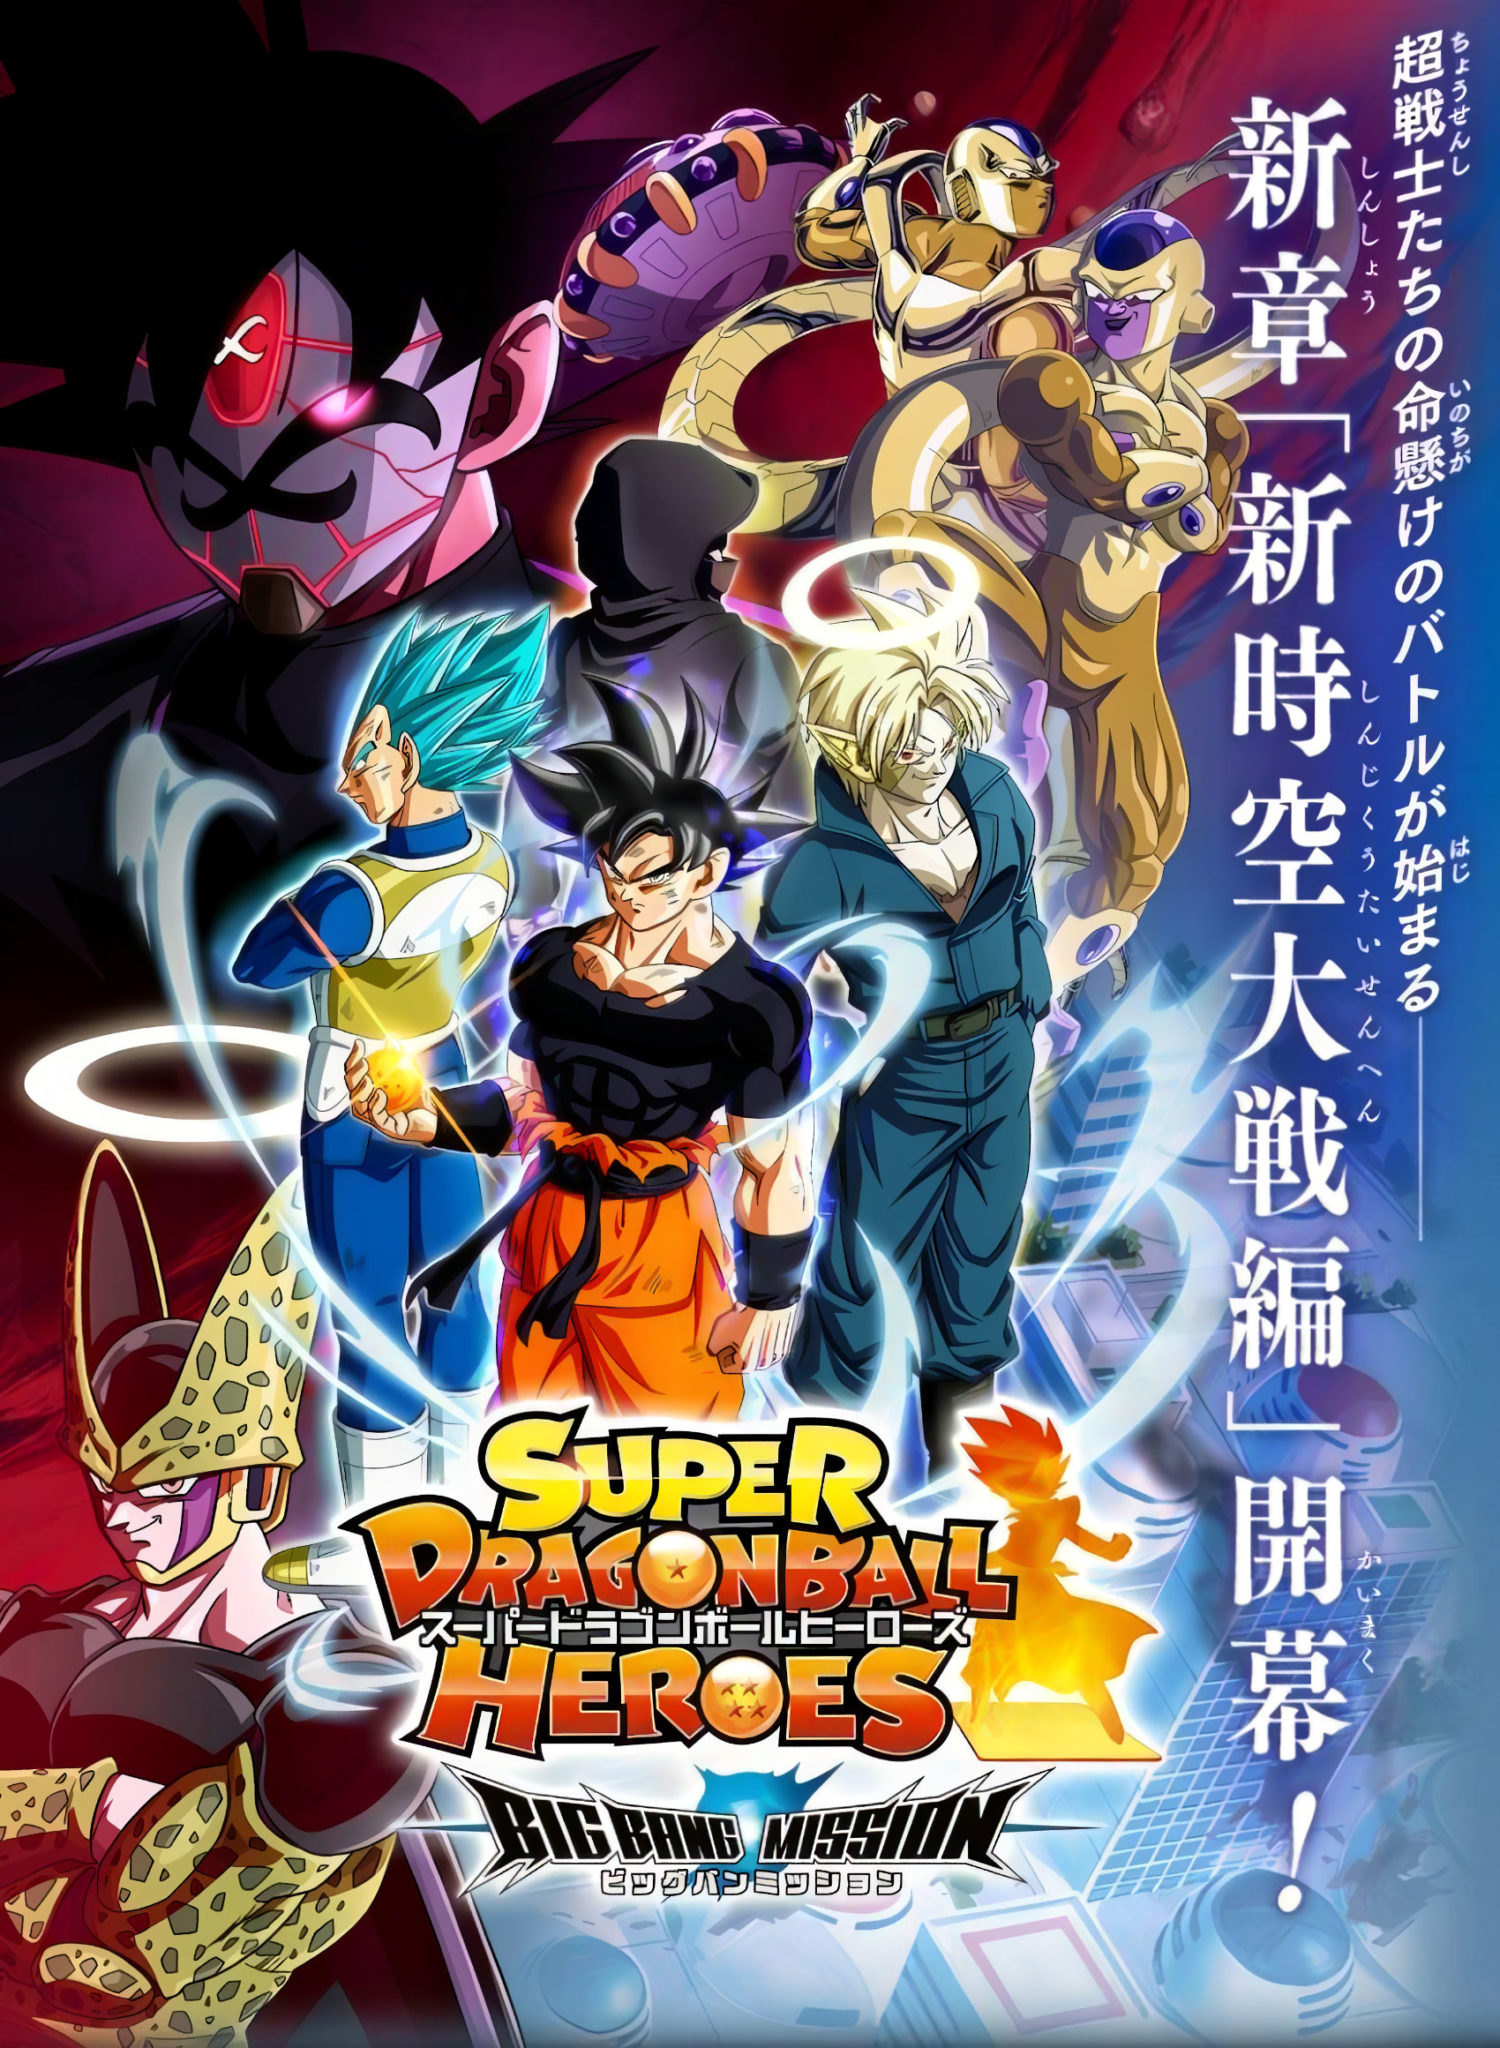 Super Dragon Ball Heroes chuẩn bị ra mắt tập mới, hứa hẹn những cuộc chiến  bùng nổ và mãn nhãn